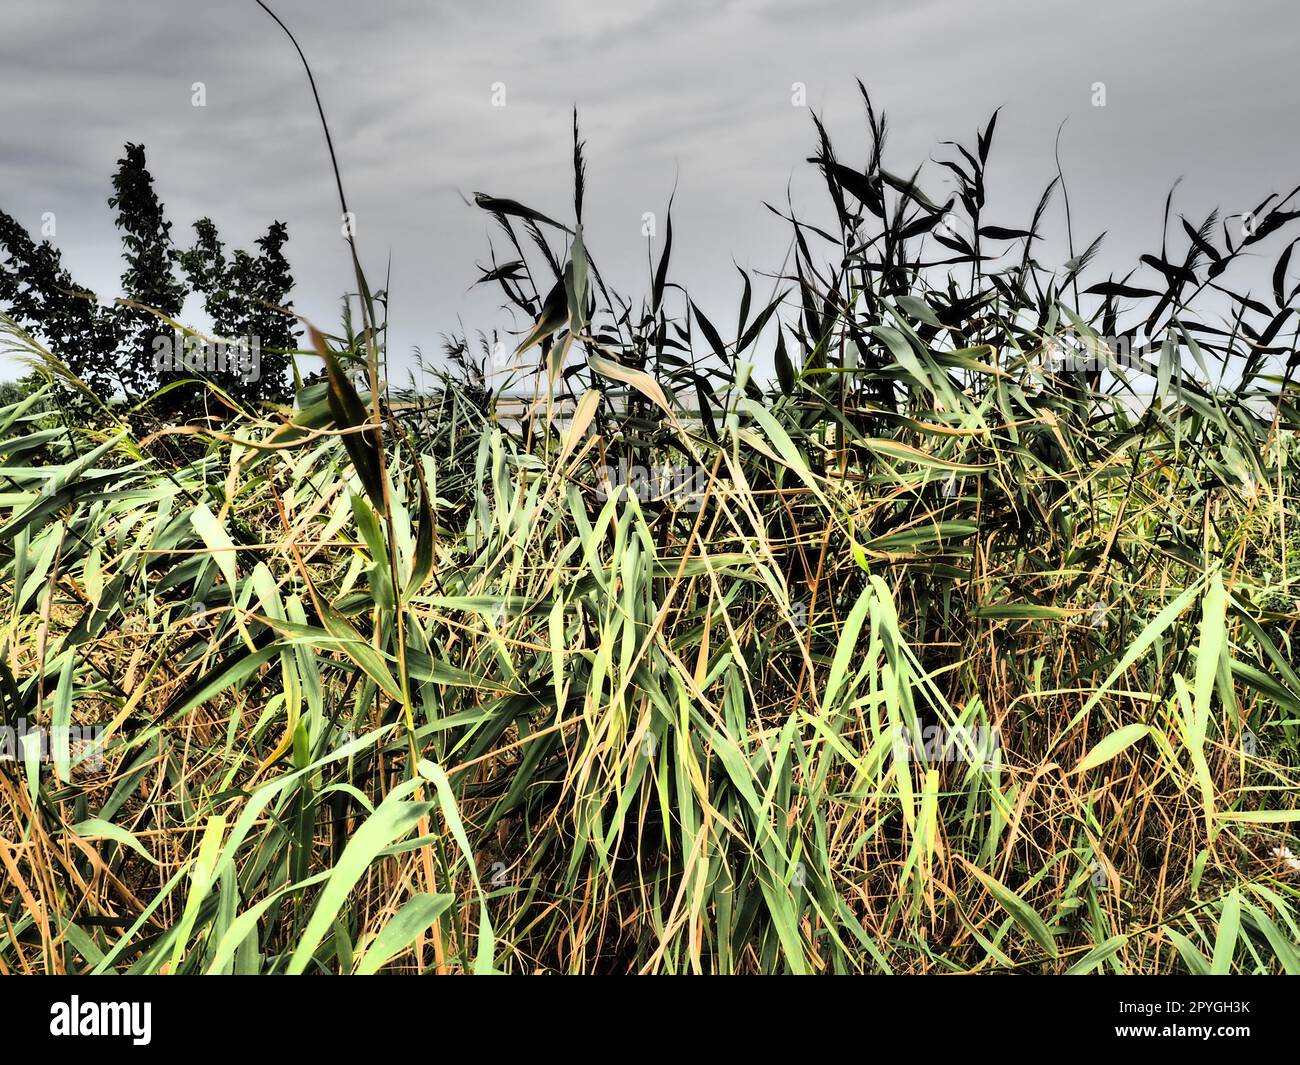 Rotschildkröte, oder Südschildkröte, Phragmites australis, ein hohes mehrjähriges Gras der Gattung Reed. Flora der Mündung. Feuchtigkeitsliebende Pflanze. Böden mit nahe stehendem Grundwasser. Stürmisches Wetter. Stockfoto